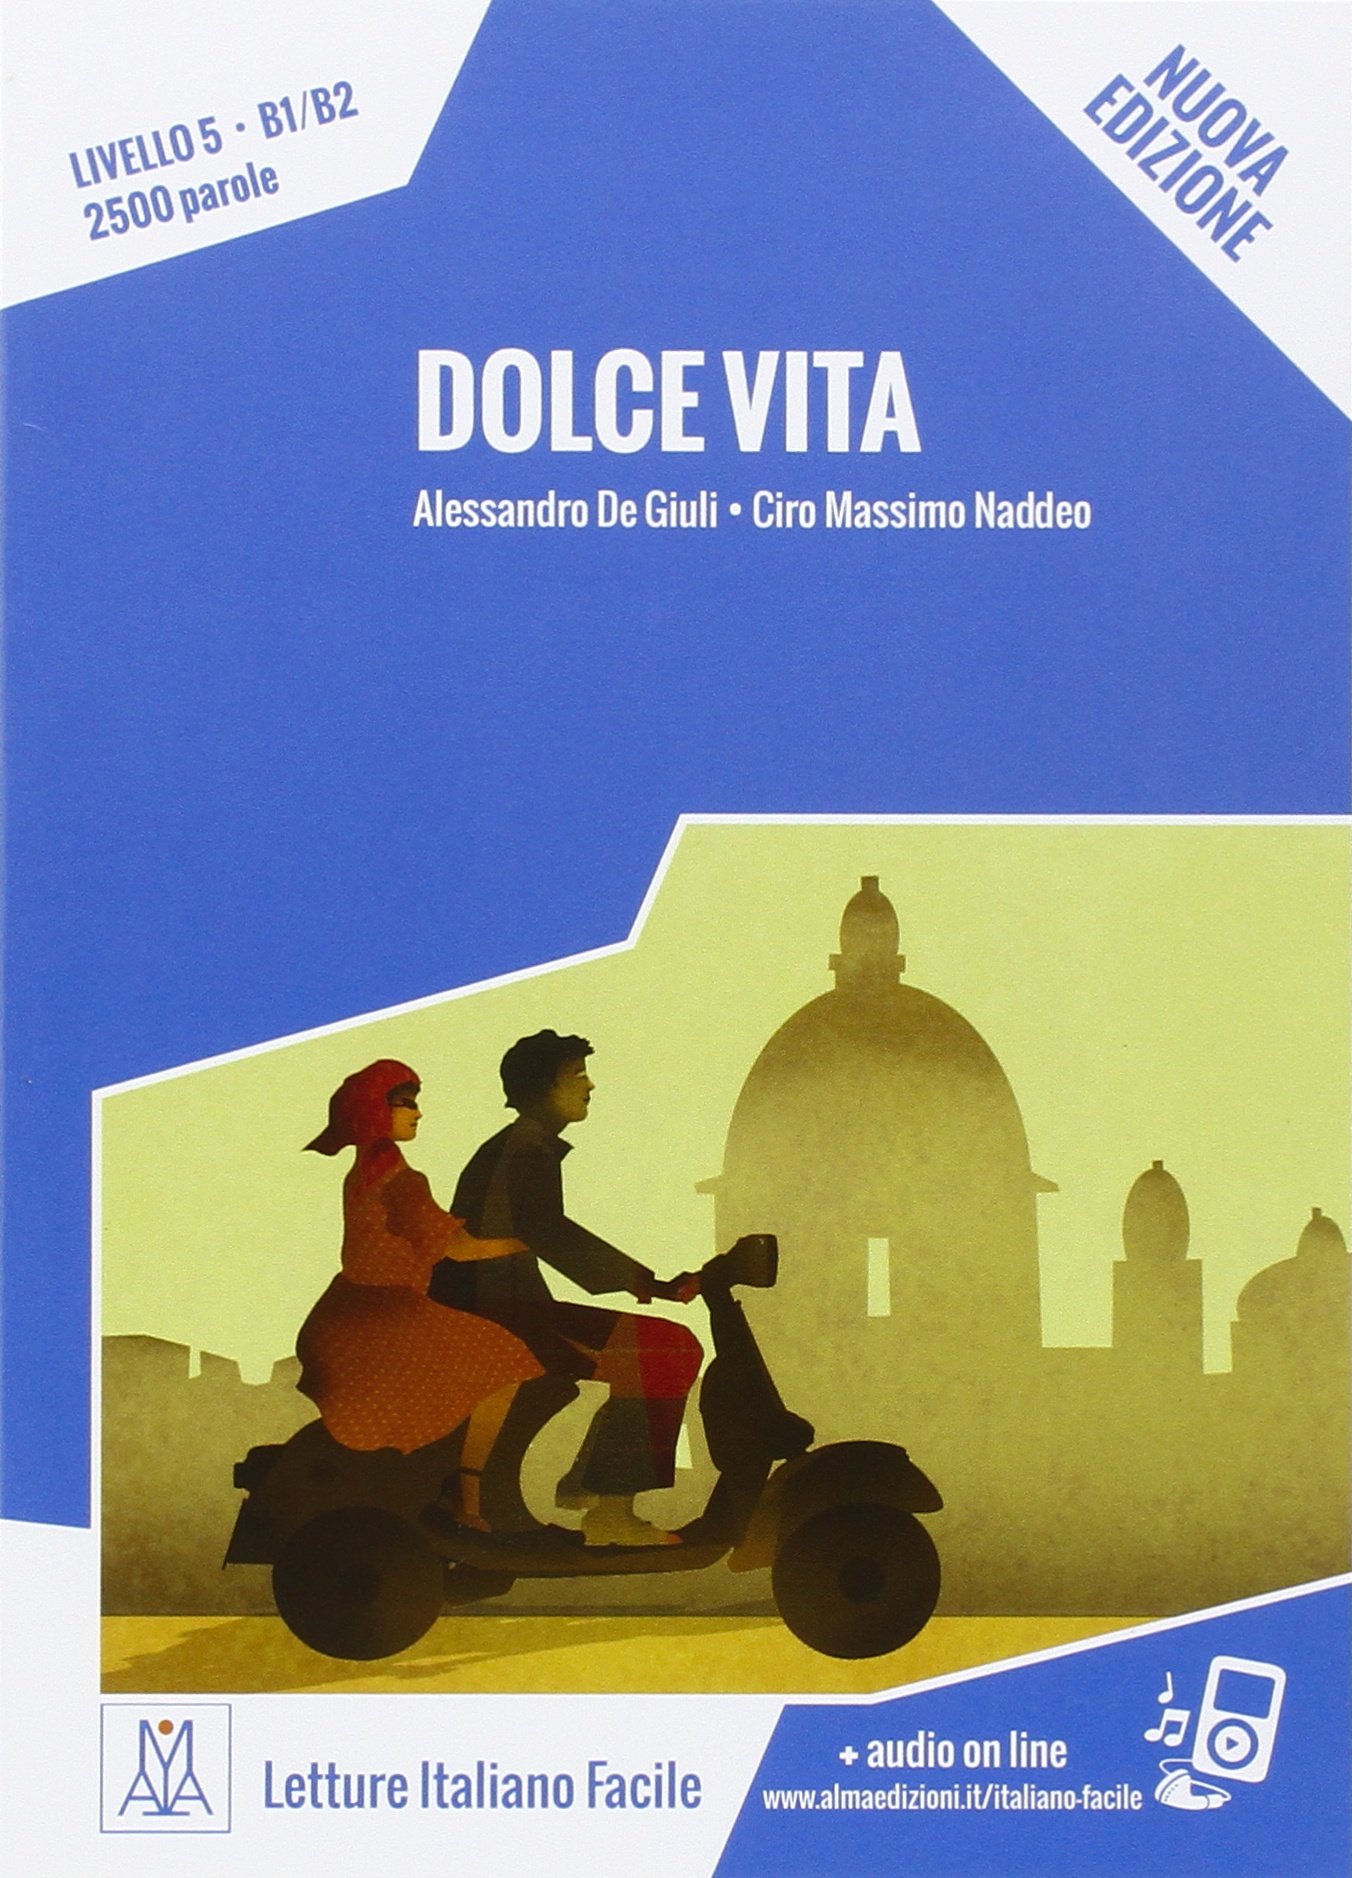 LETTURE ITALIANO FACILE Dolce vita Libro